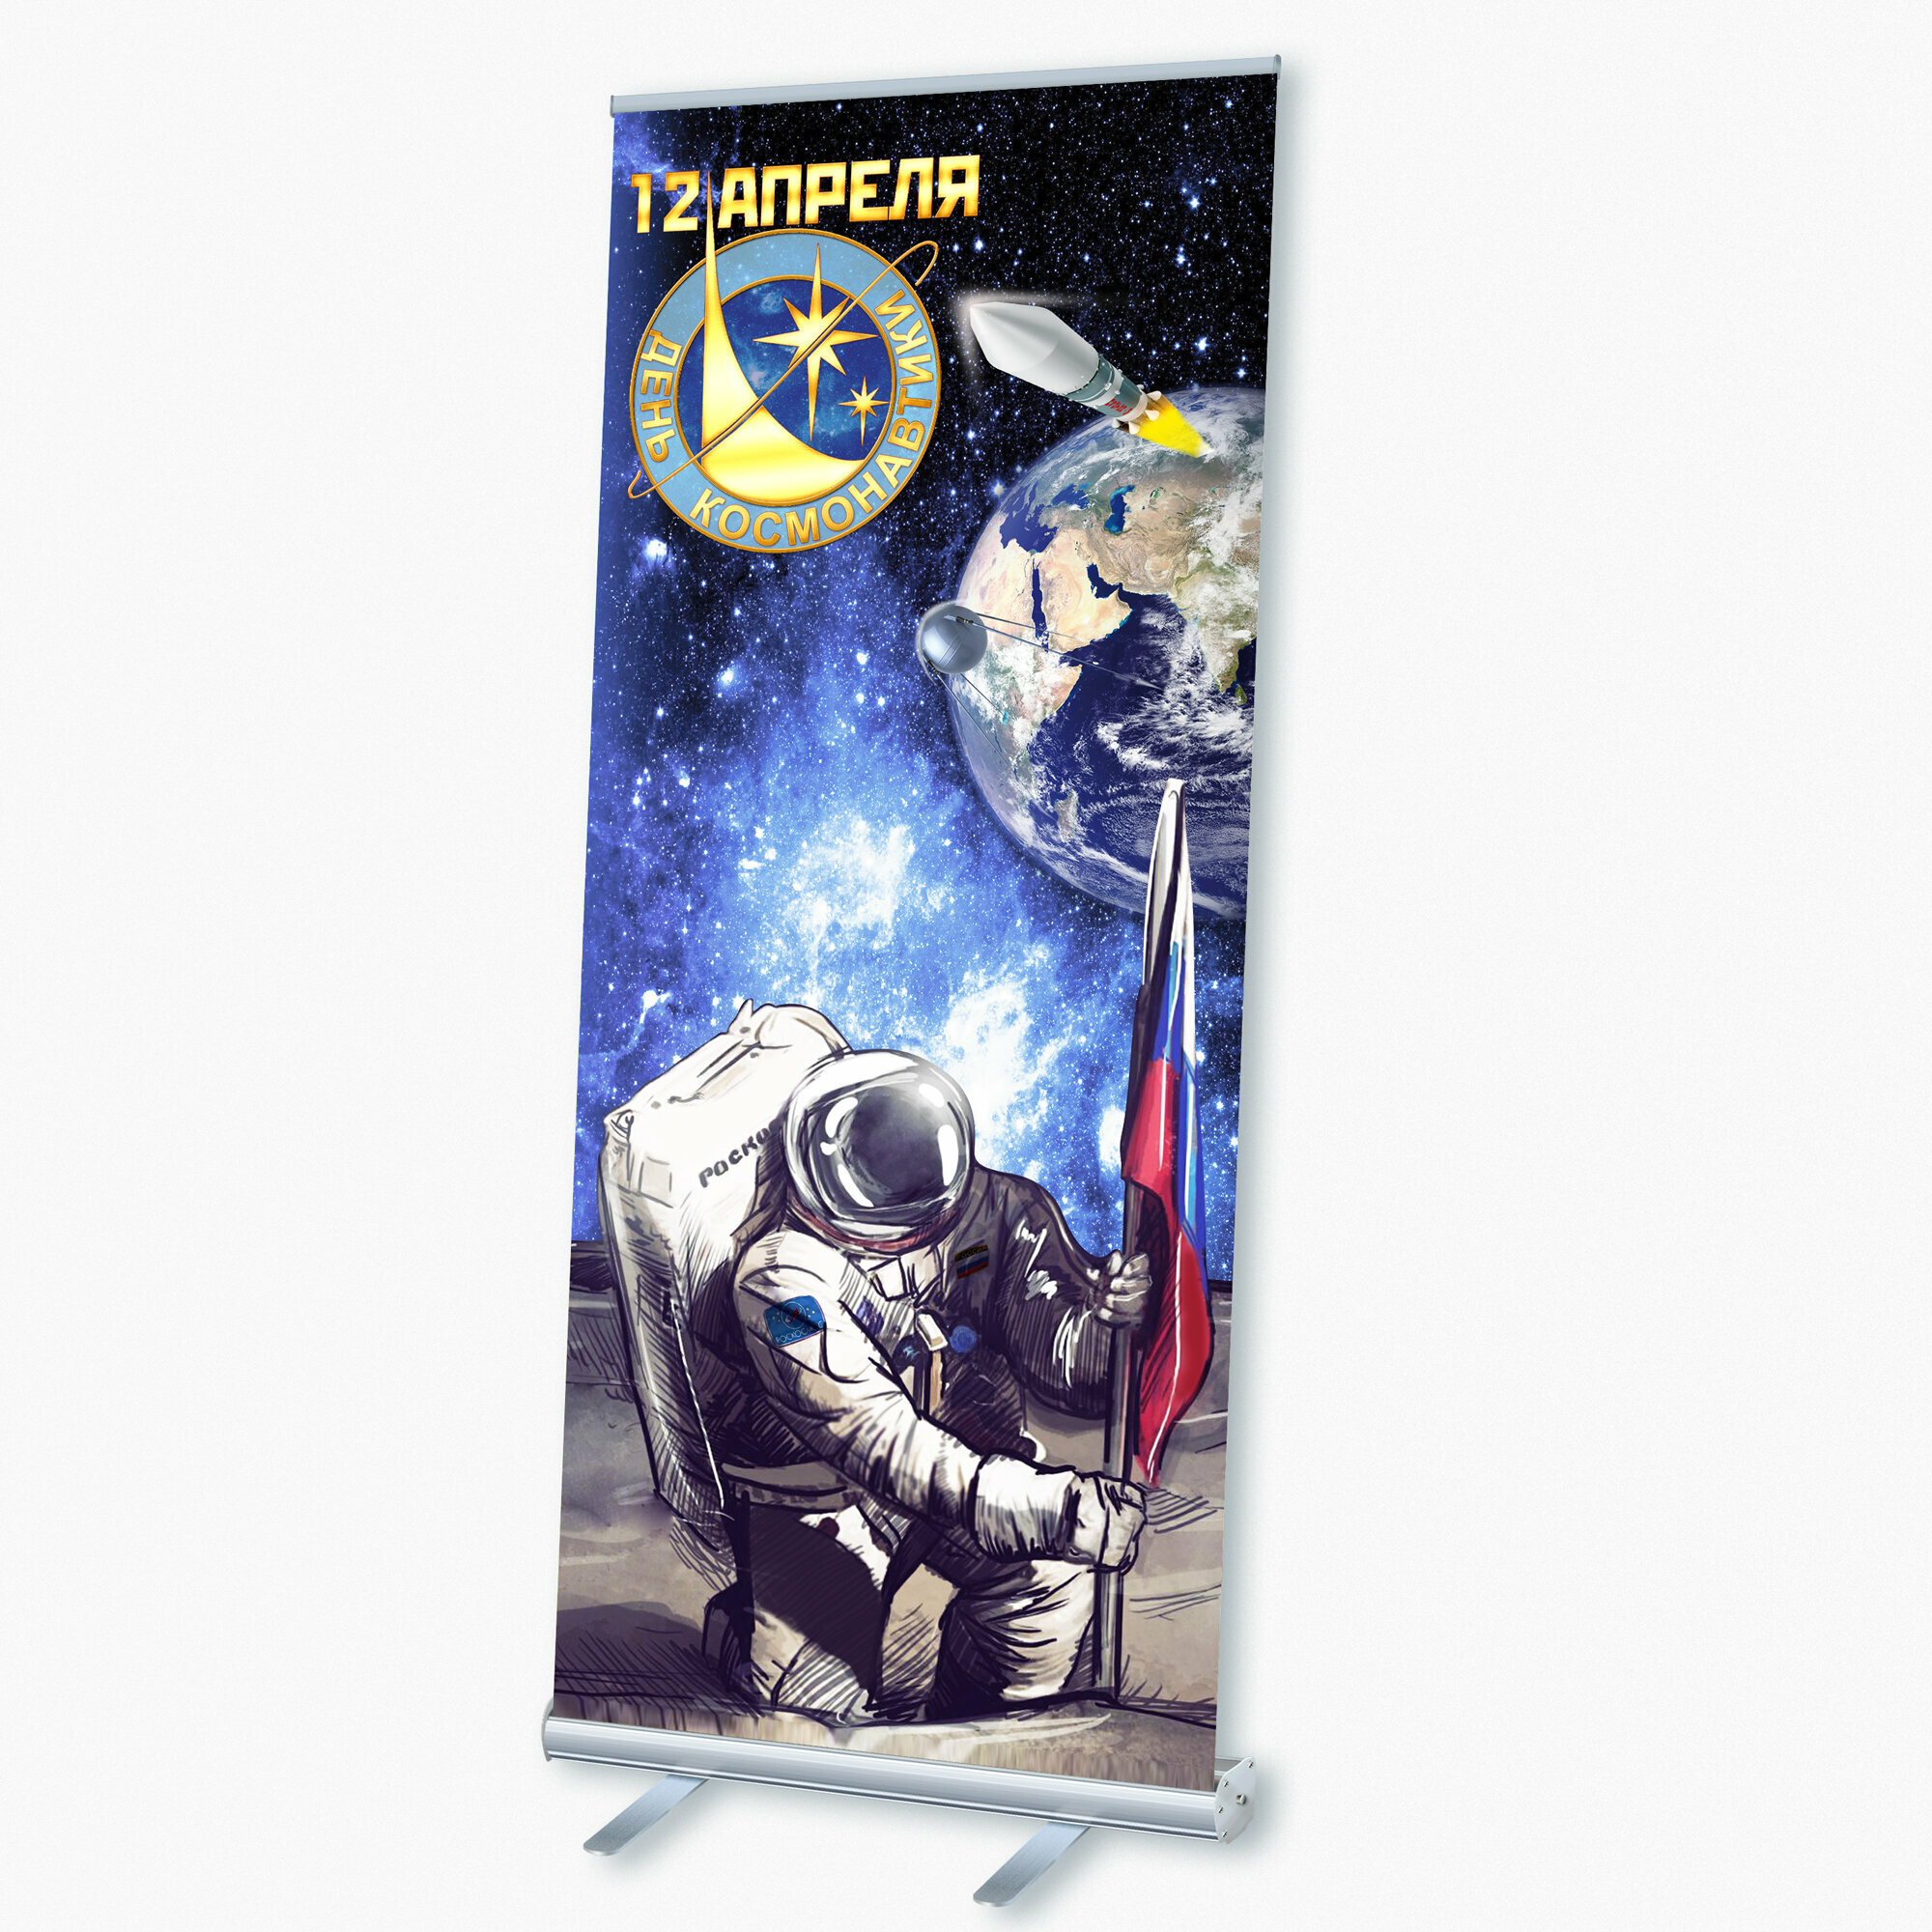 Мобильный cтенд Ролл Ап (Roll Up) с печатью баннера на День космонавтики, 85x200 см.